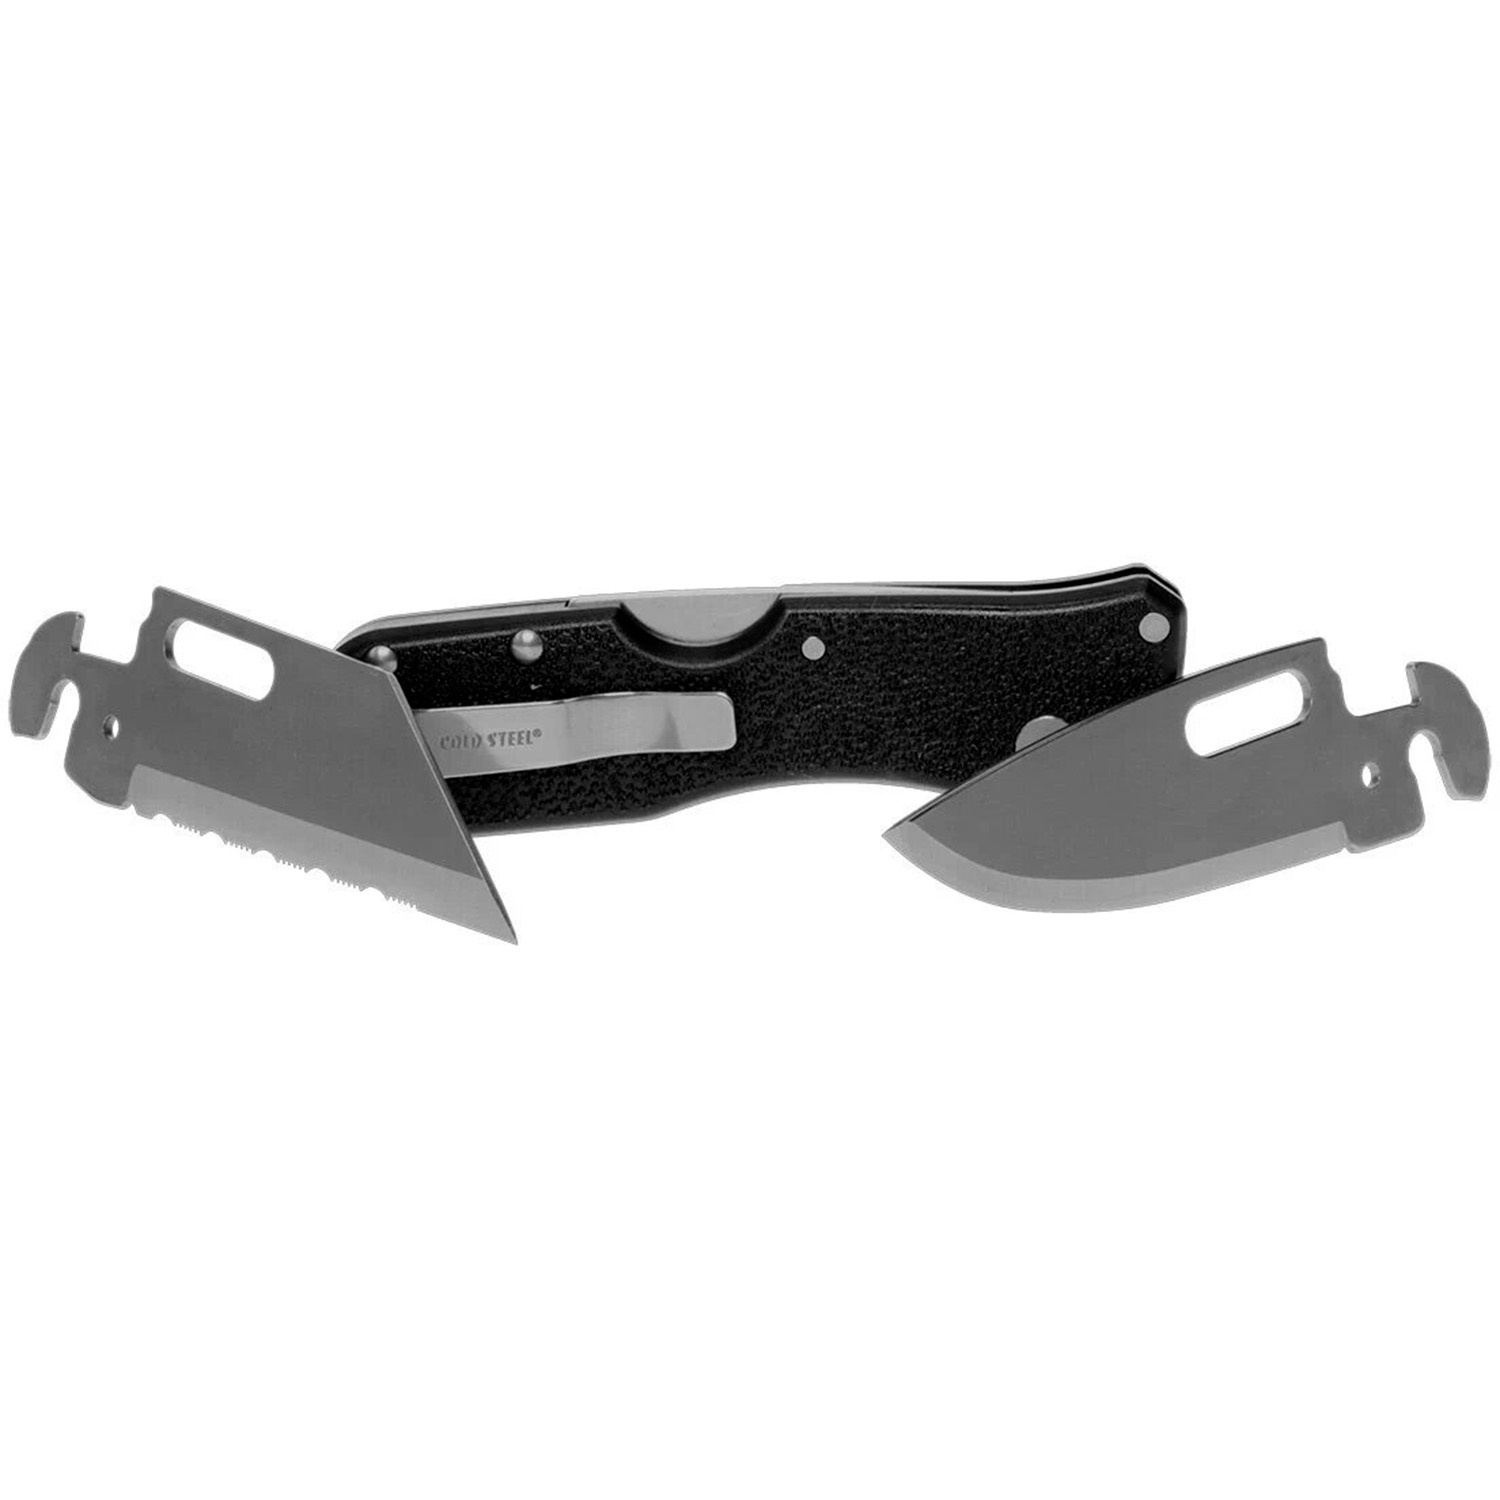 Нож Cold Steel "Click N Cut" смен. лезвия, сталь 420J2